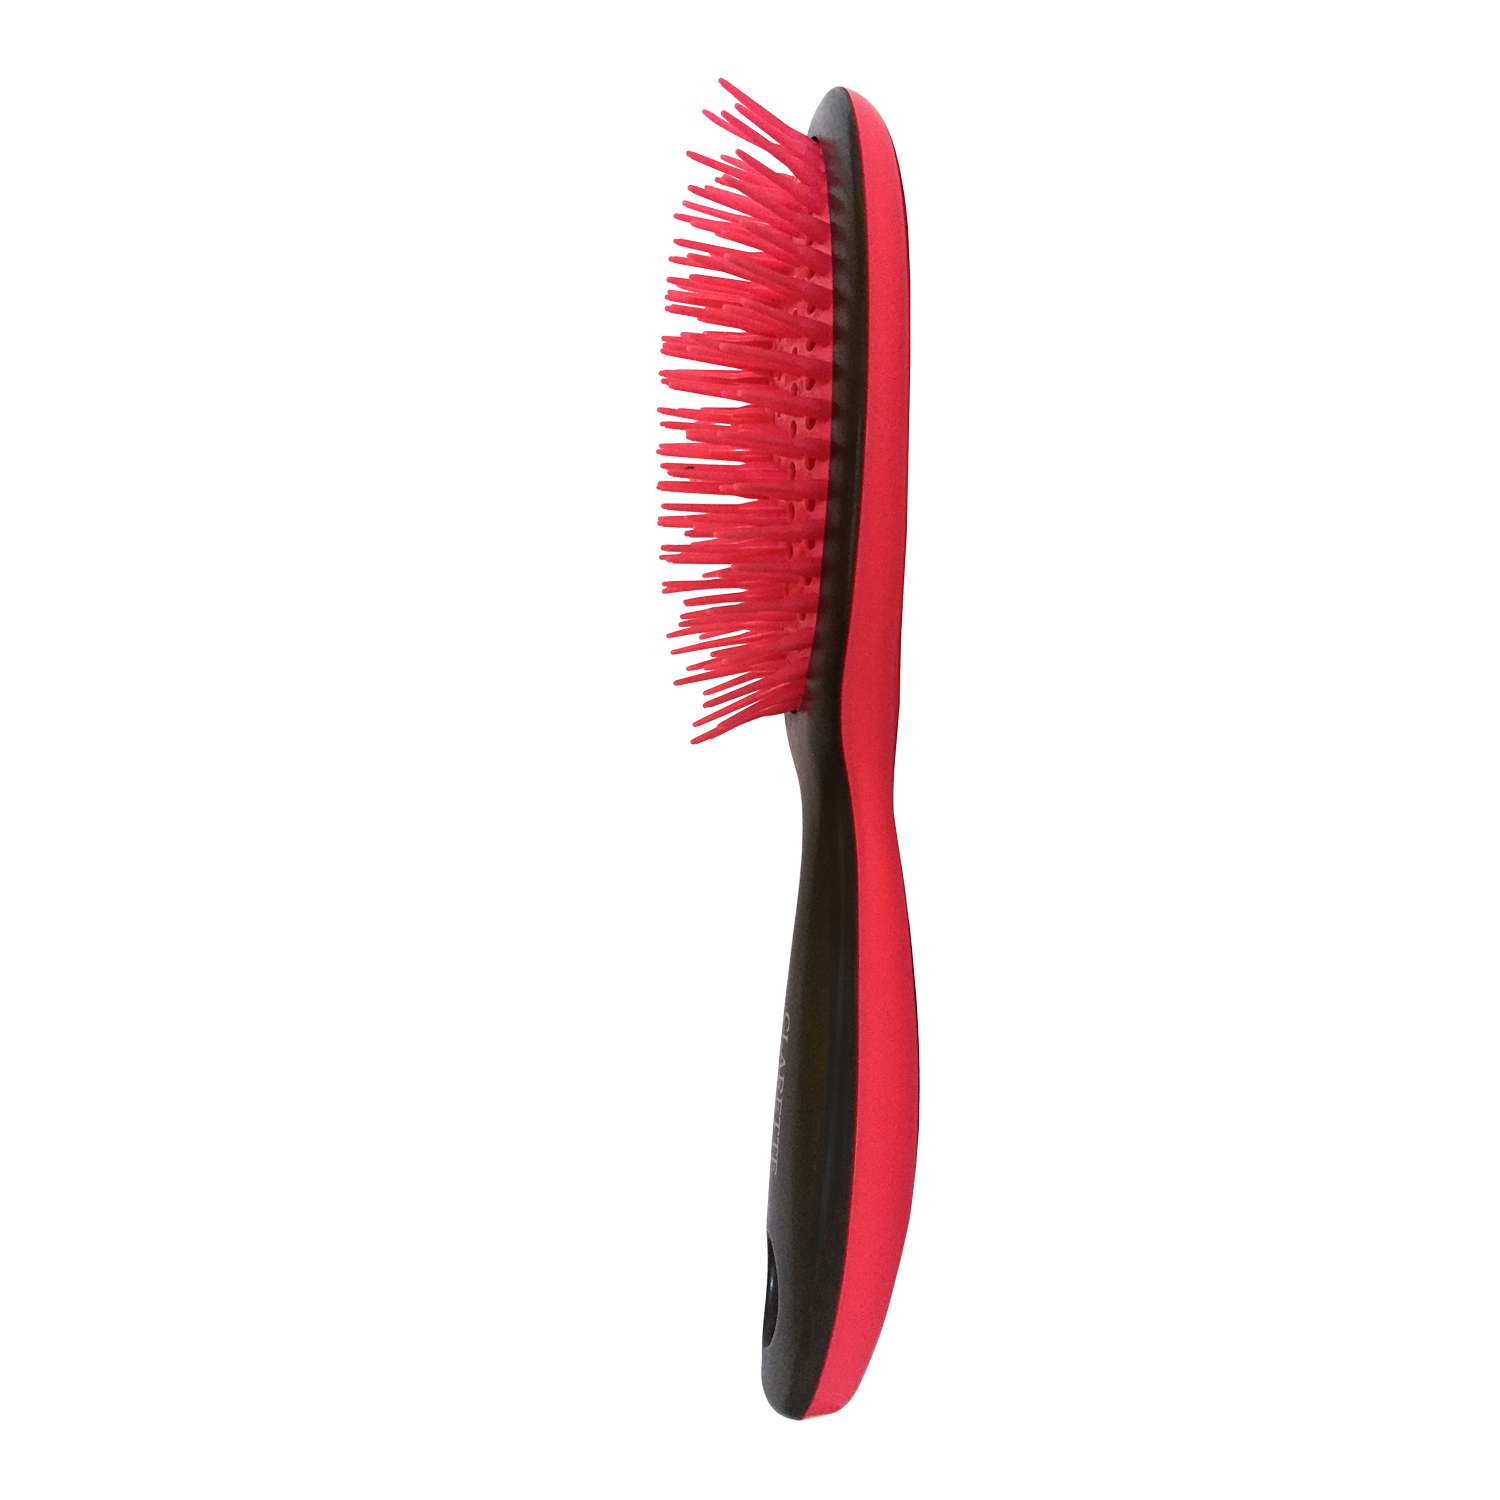 Расческа для волос Clarette массажная продувная с силиконовым зубьями - фото 2